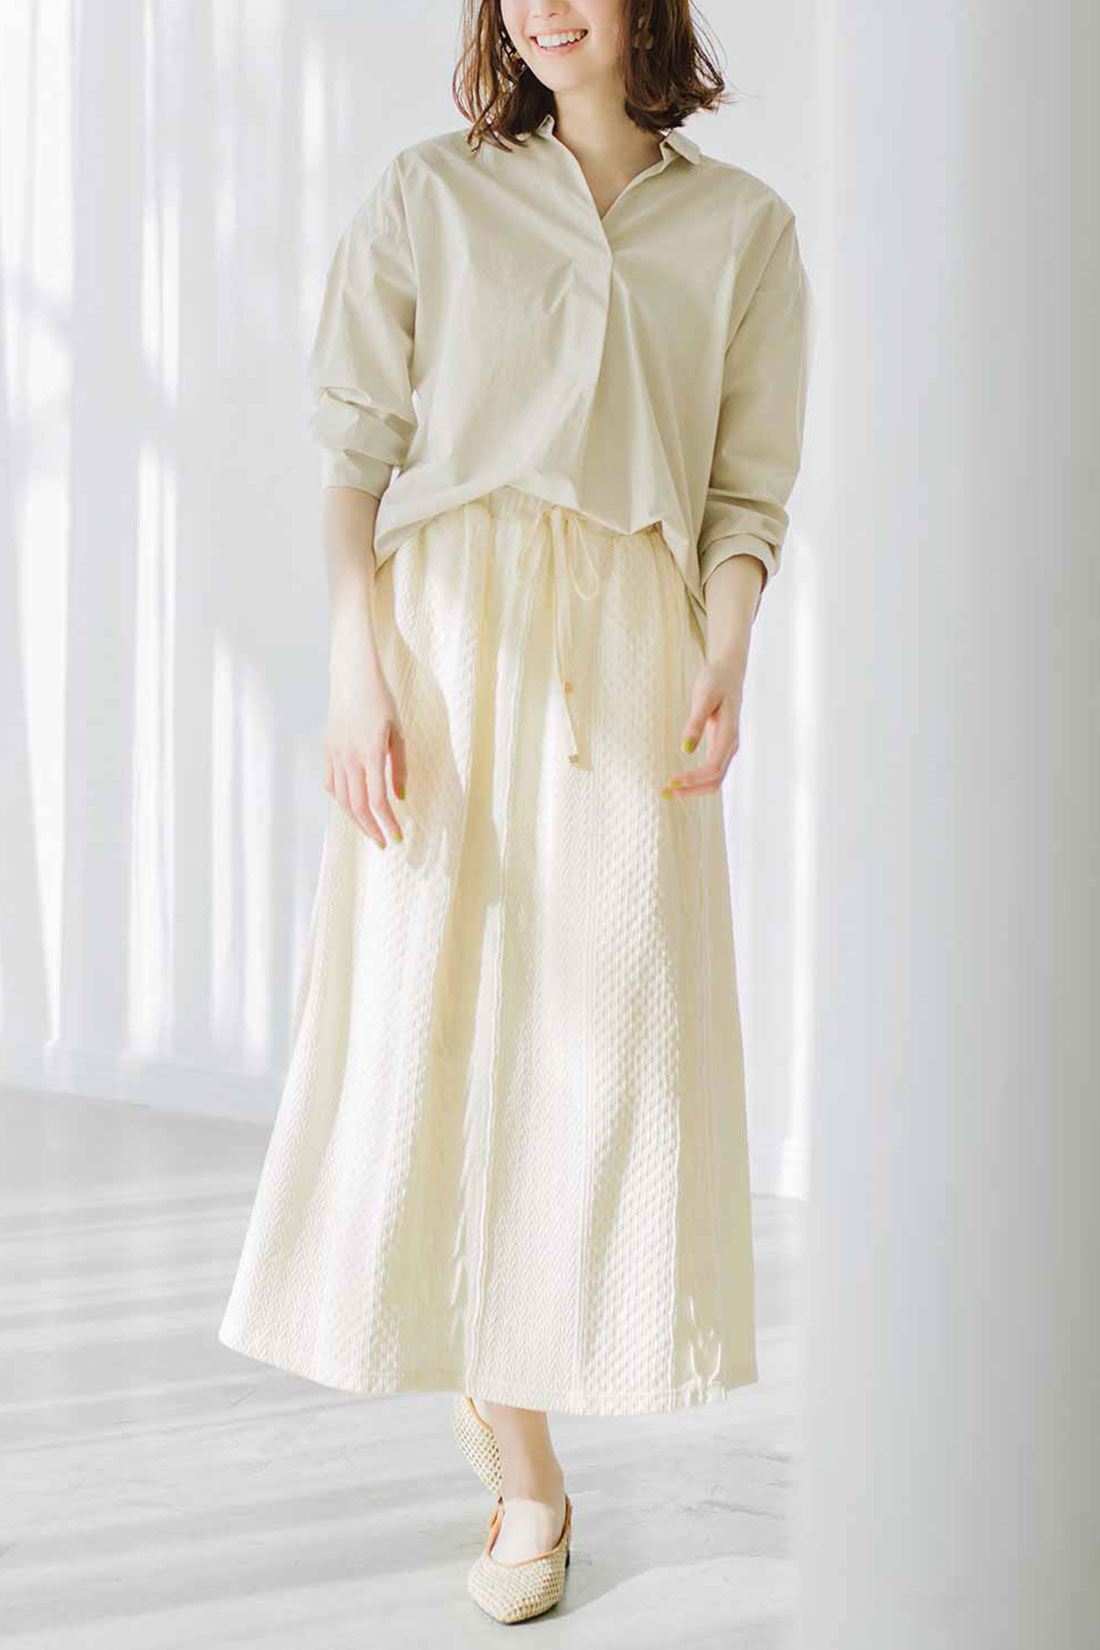 Real Stock|Live love cottonプロジェクト　リブ イン コンフォート　編み柄が素敵なオーガニックコットンロングスカート〈ブラック〉|これは参考画像です。お届けするカラーとは異なります。